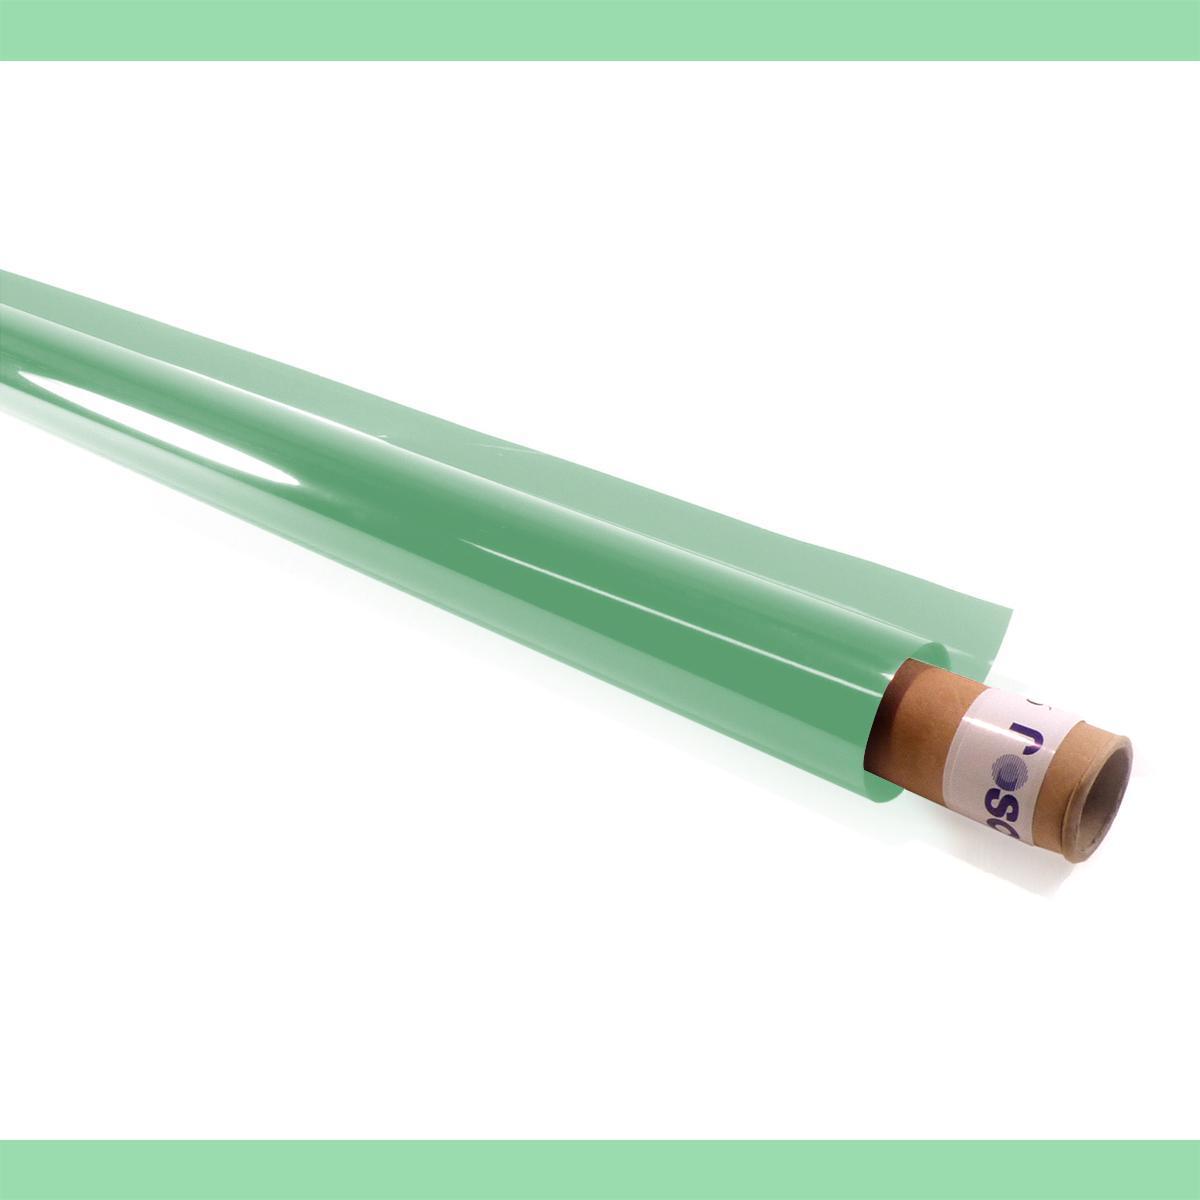 An image of 219 Fluorescent Green Lighting Gel Roll